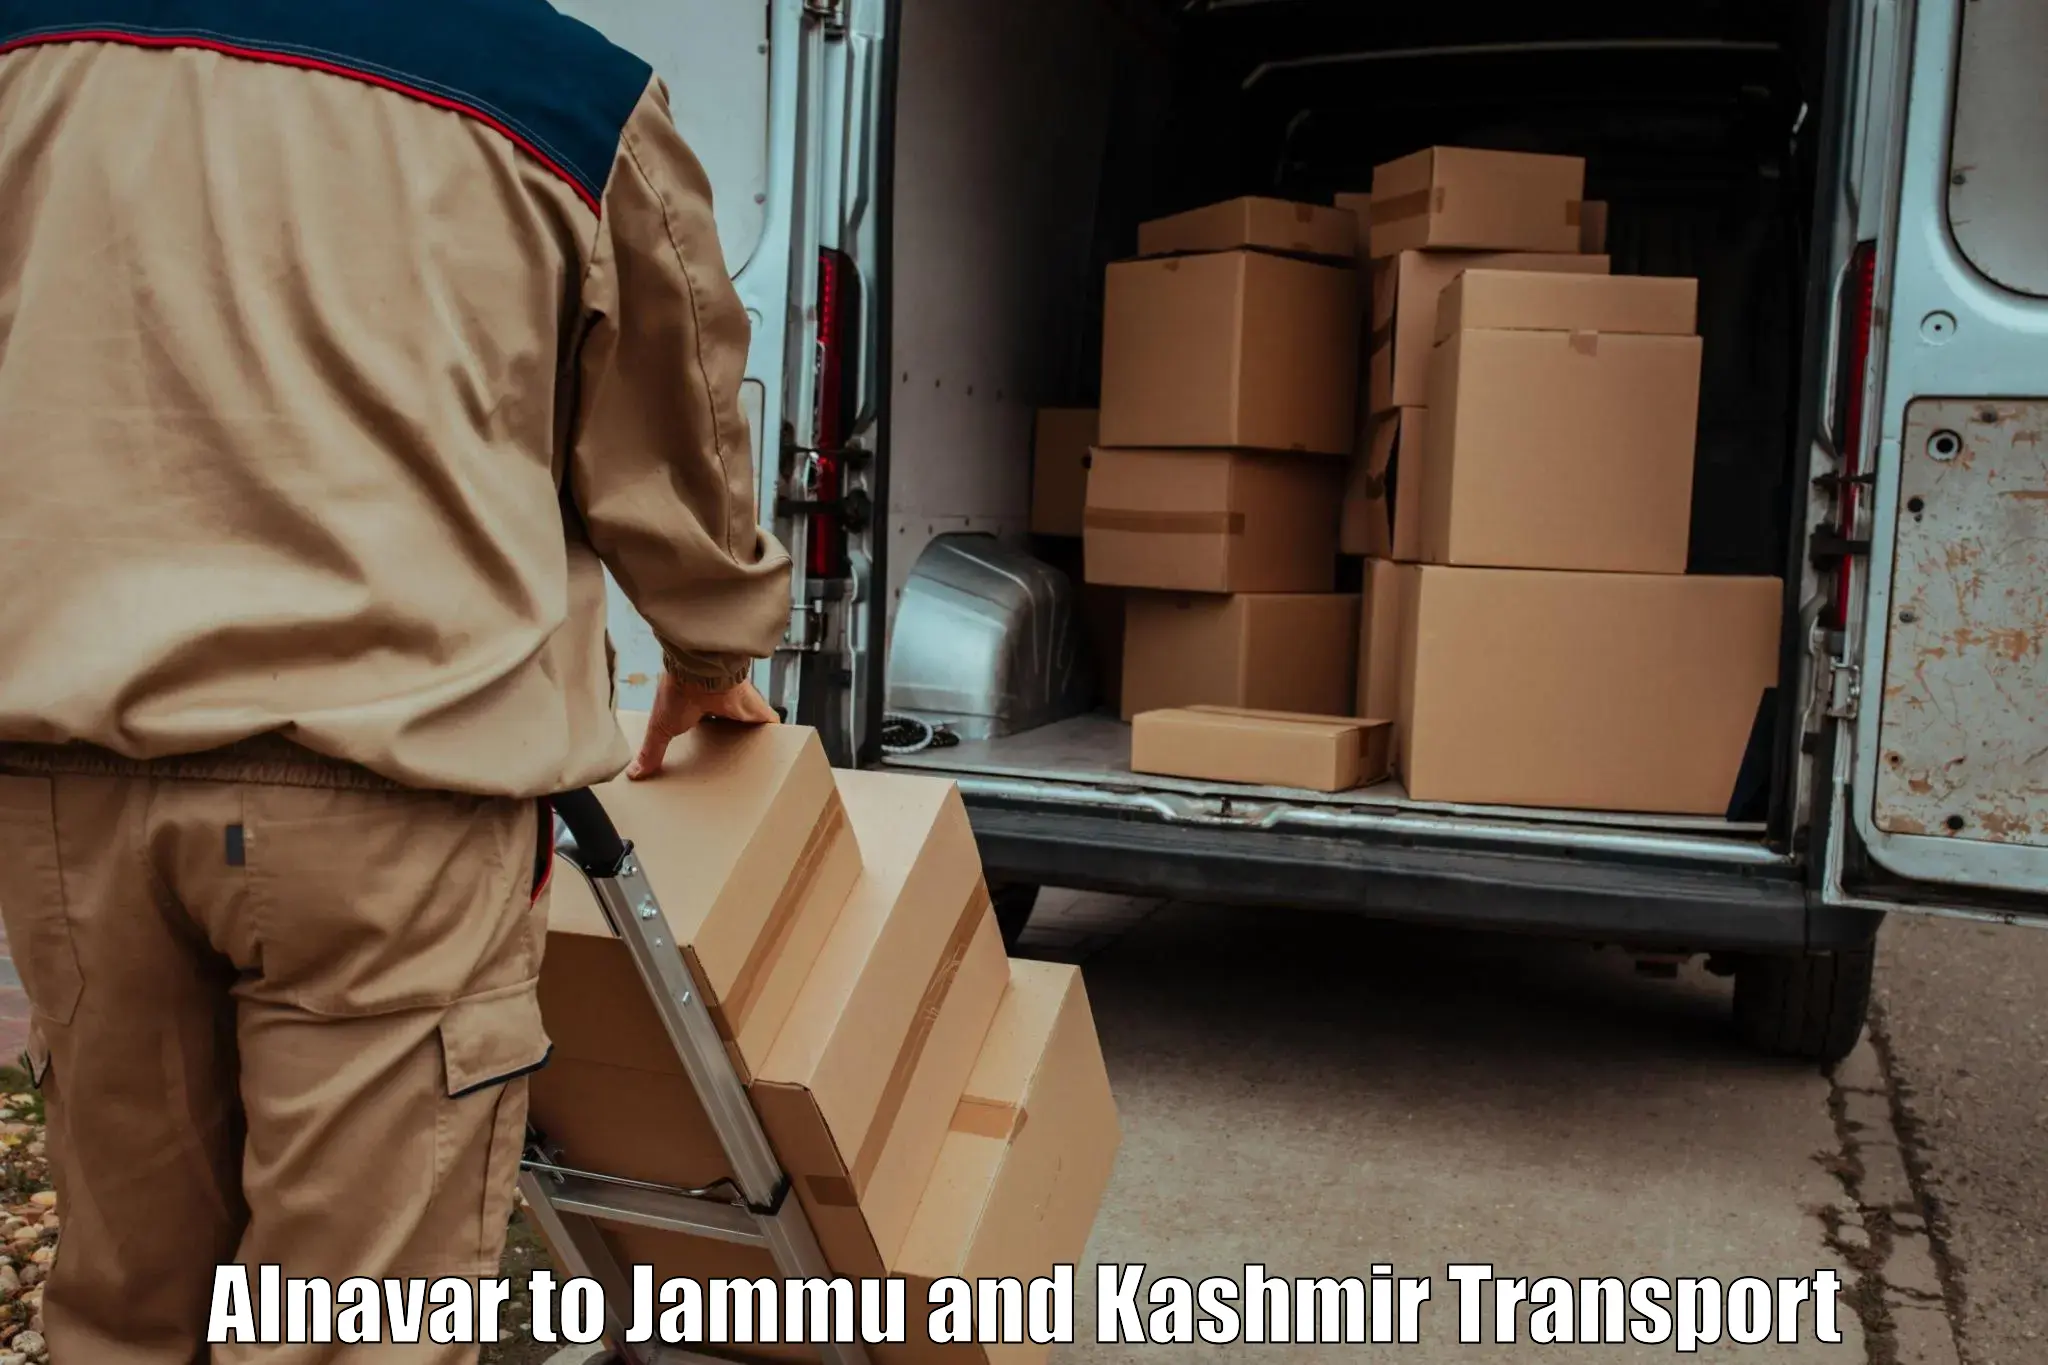 Cargo transportation services Alnavar to Baramulla